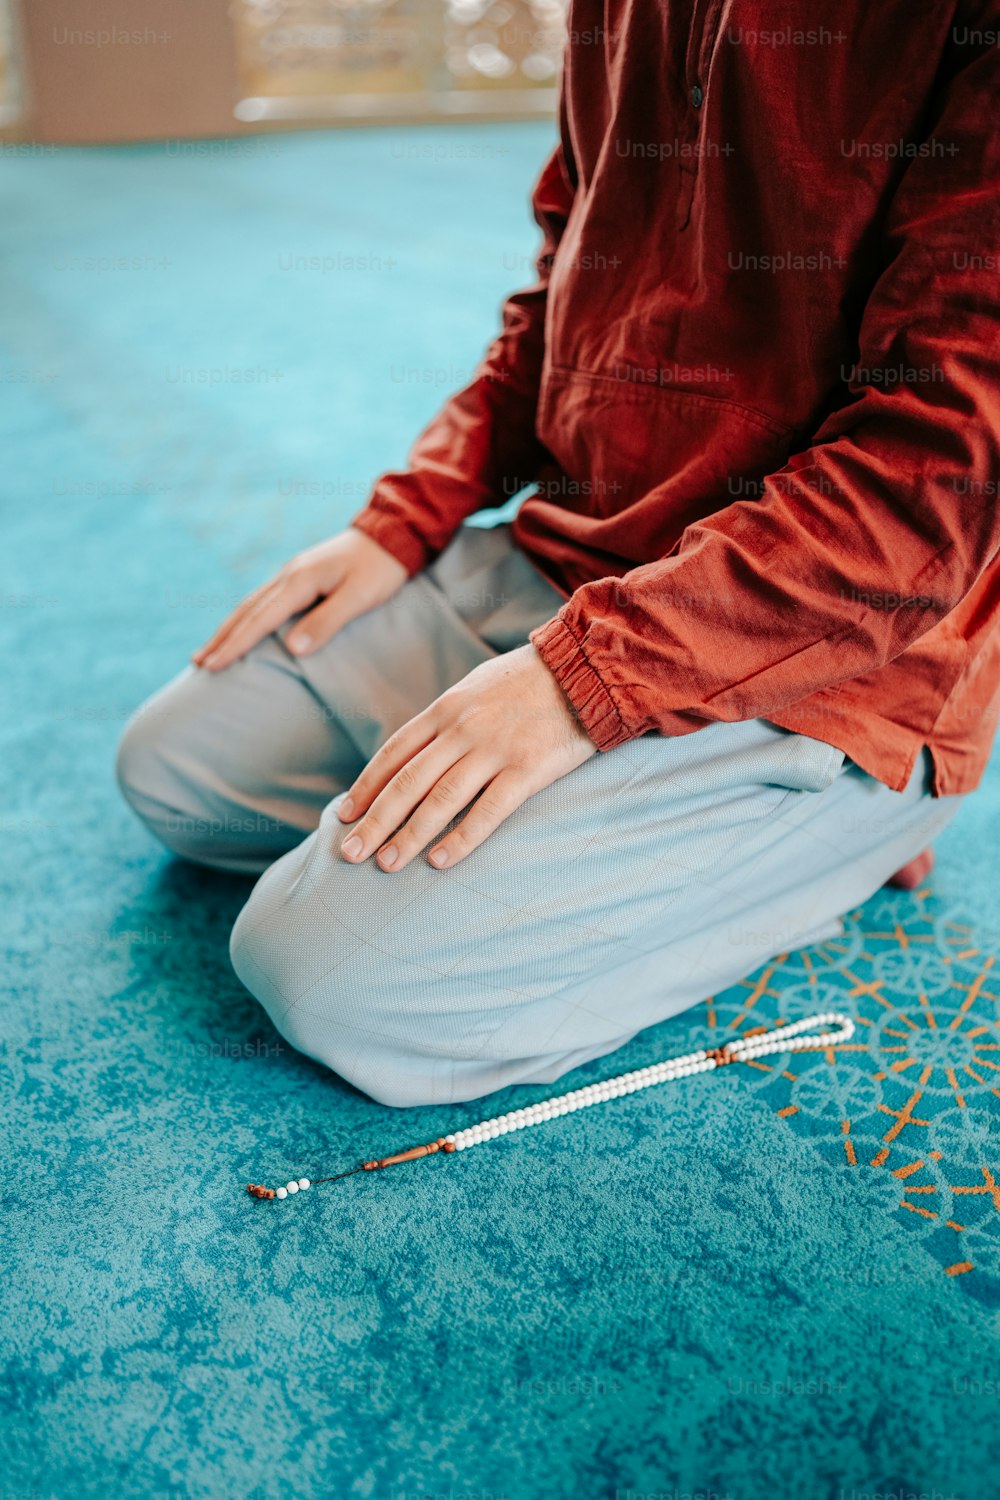 Una persona sentada en el suelo con un par de agujas de tejer